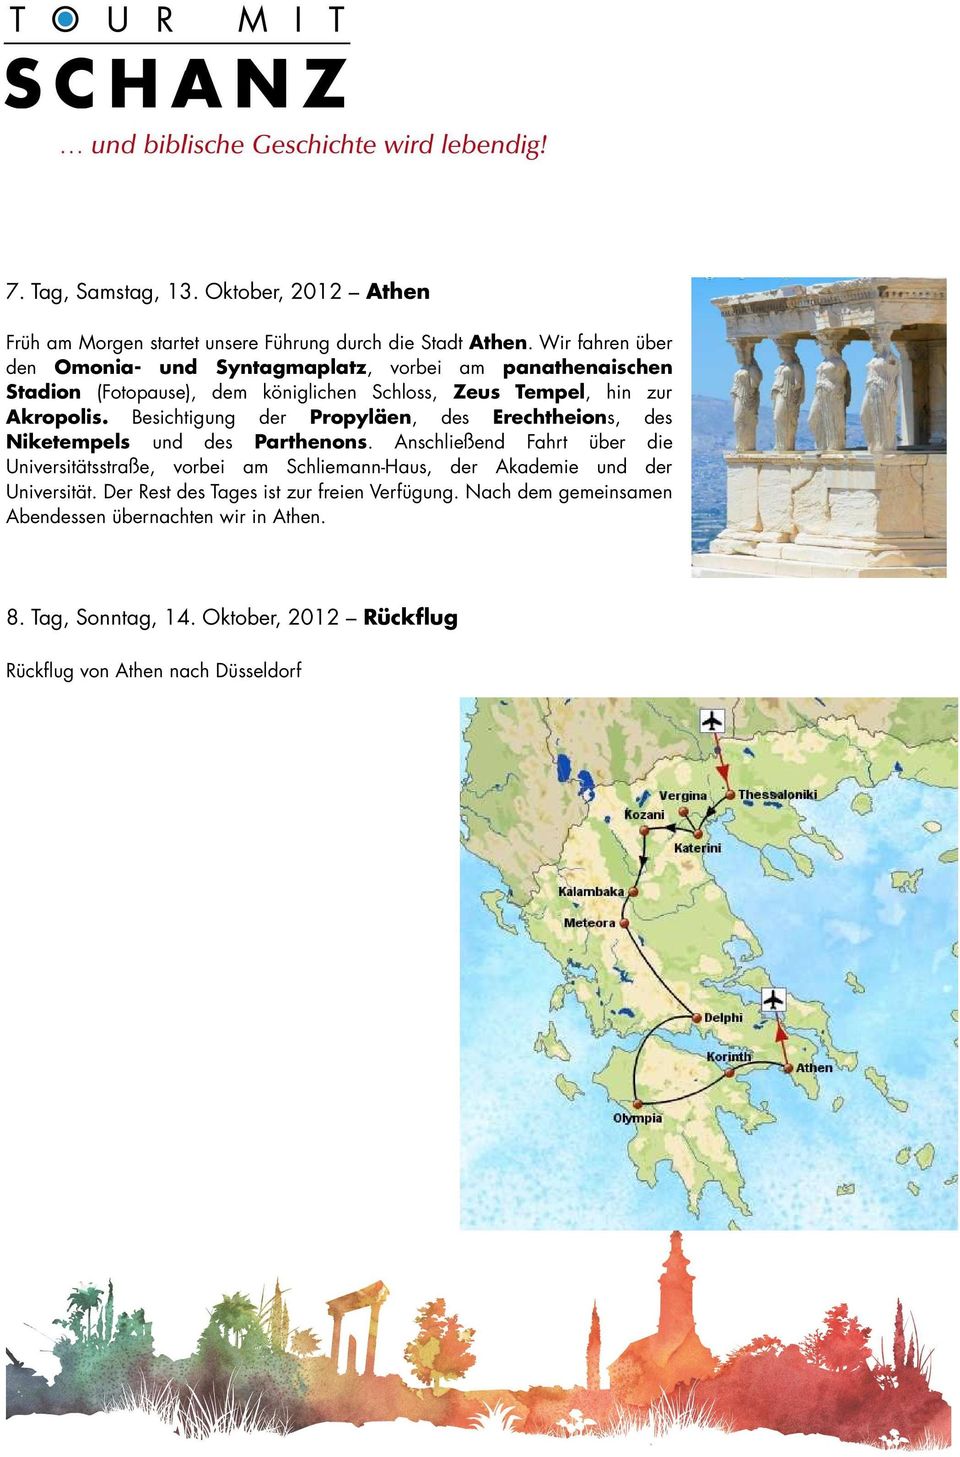 Besichtigung der Propyläen, des Erechtheions, des Niketempels und des Parthenons.